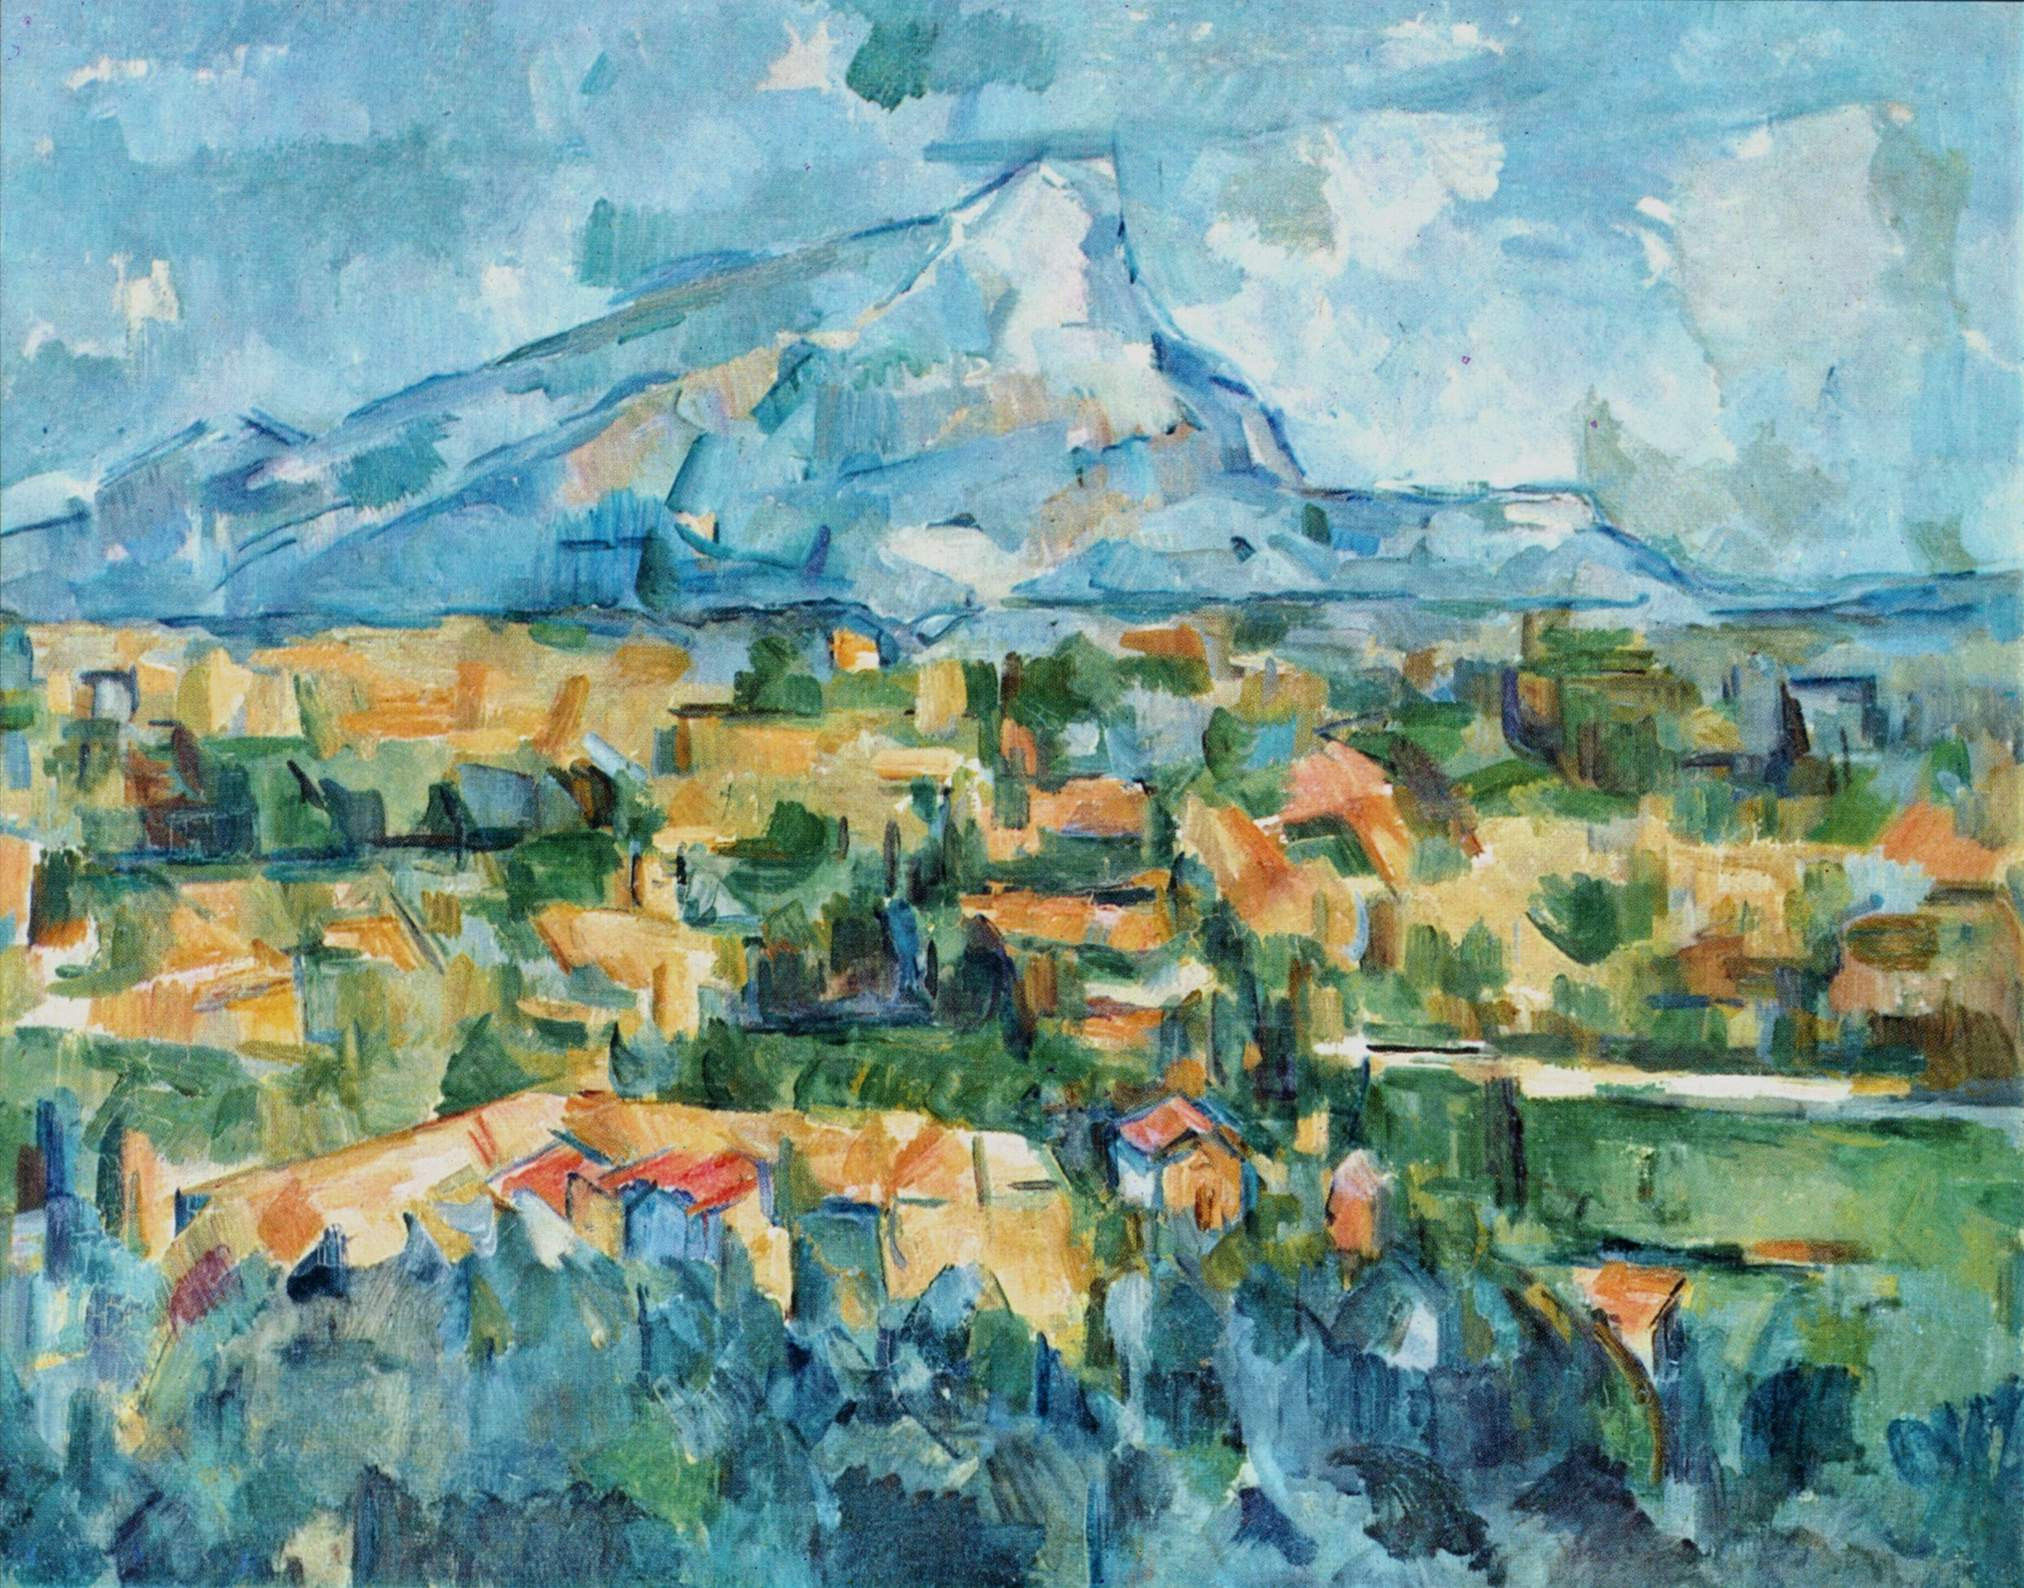 Abstract schilderij van Paul Cezanne uit 1904, Montagne Sainte-Victoire